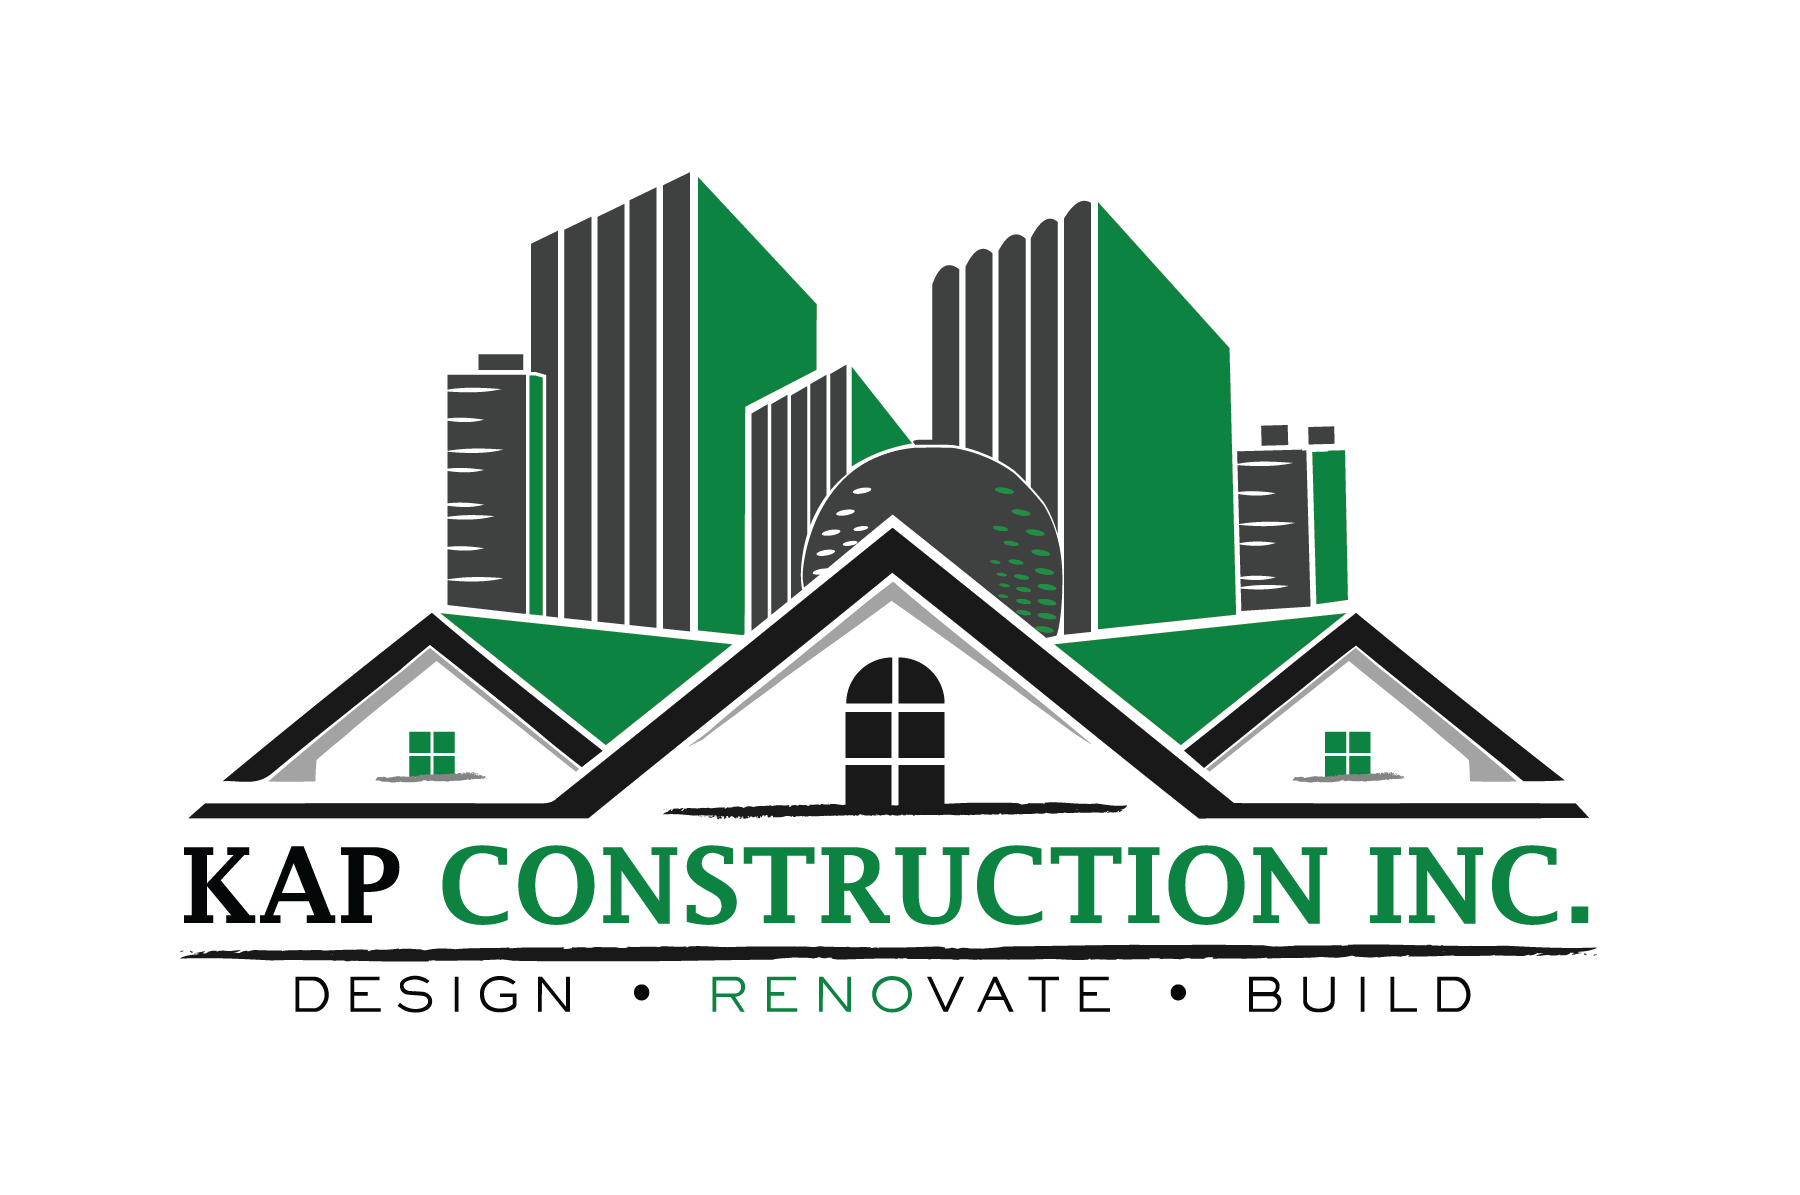 About – Kap Construction Inc